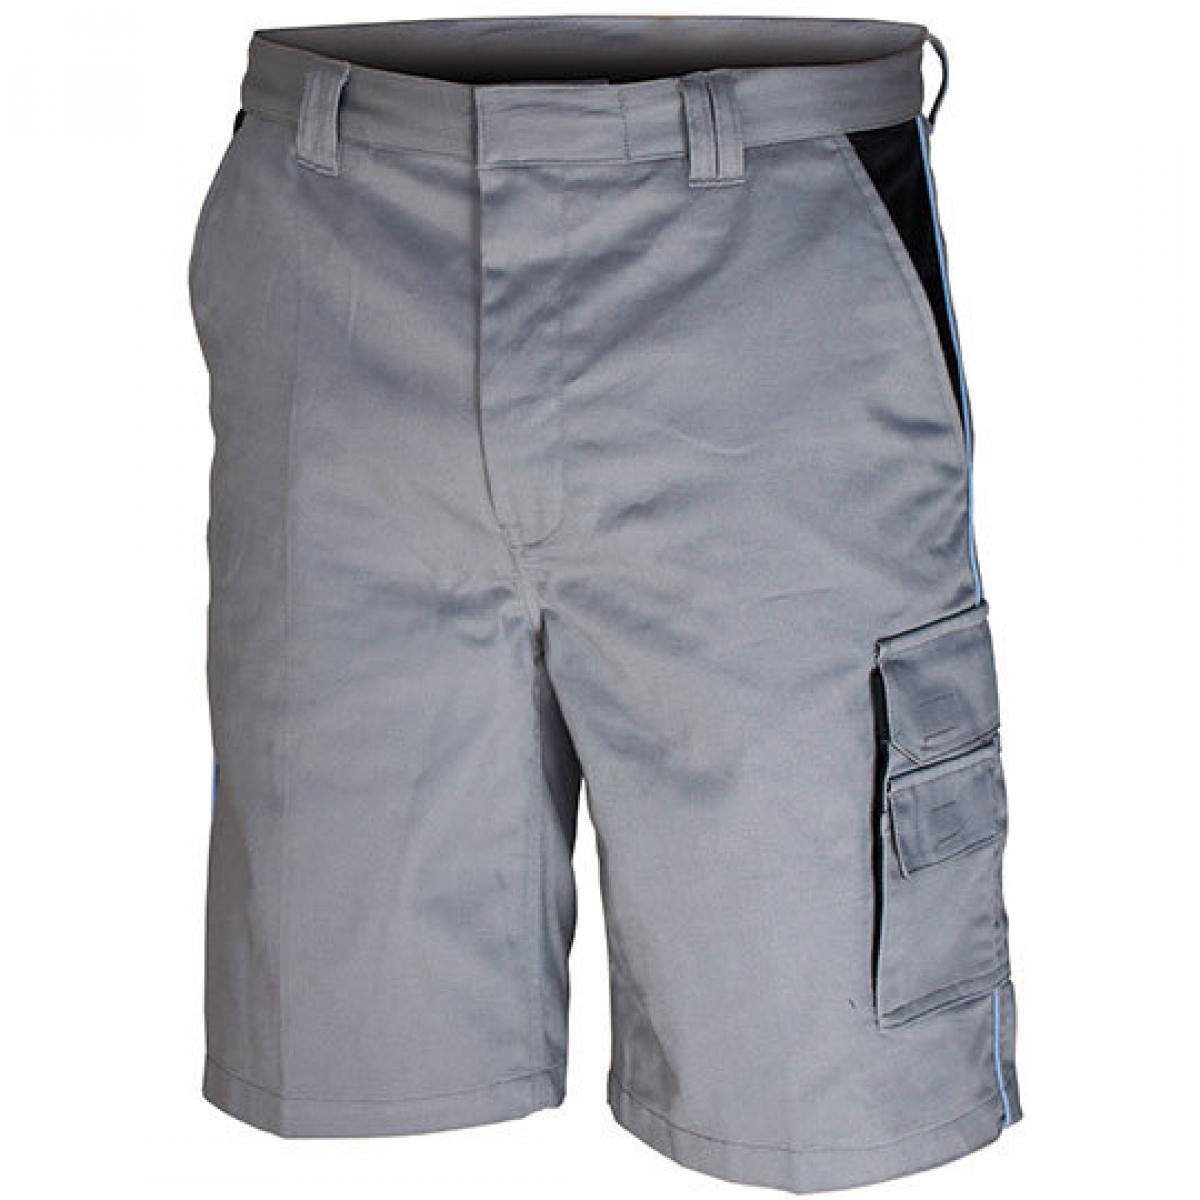 Hersteller: Carson Contrast Herstellernummer: CC709S Artikelbezeichnung: Contrast Work Shorts / Bei 60 Grad waschbar Farbe: Grey/Black